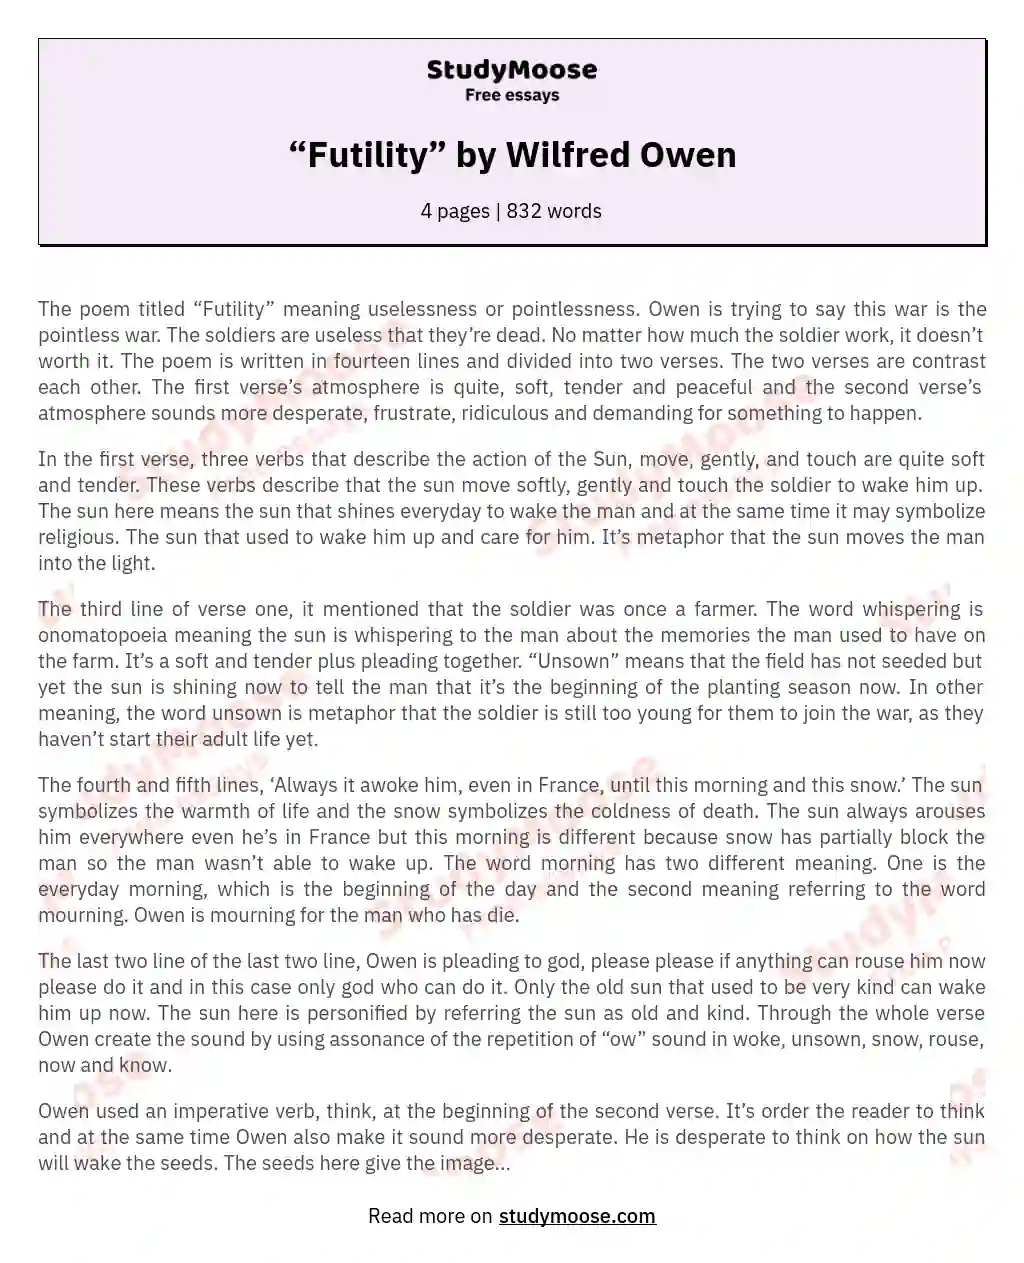 “Futility” by Wilfred Owen essay